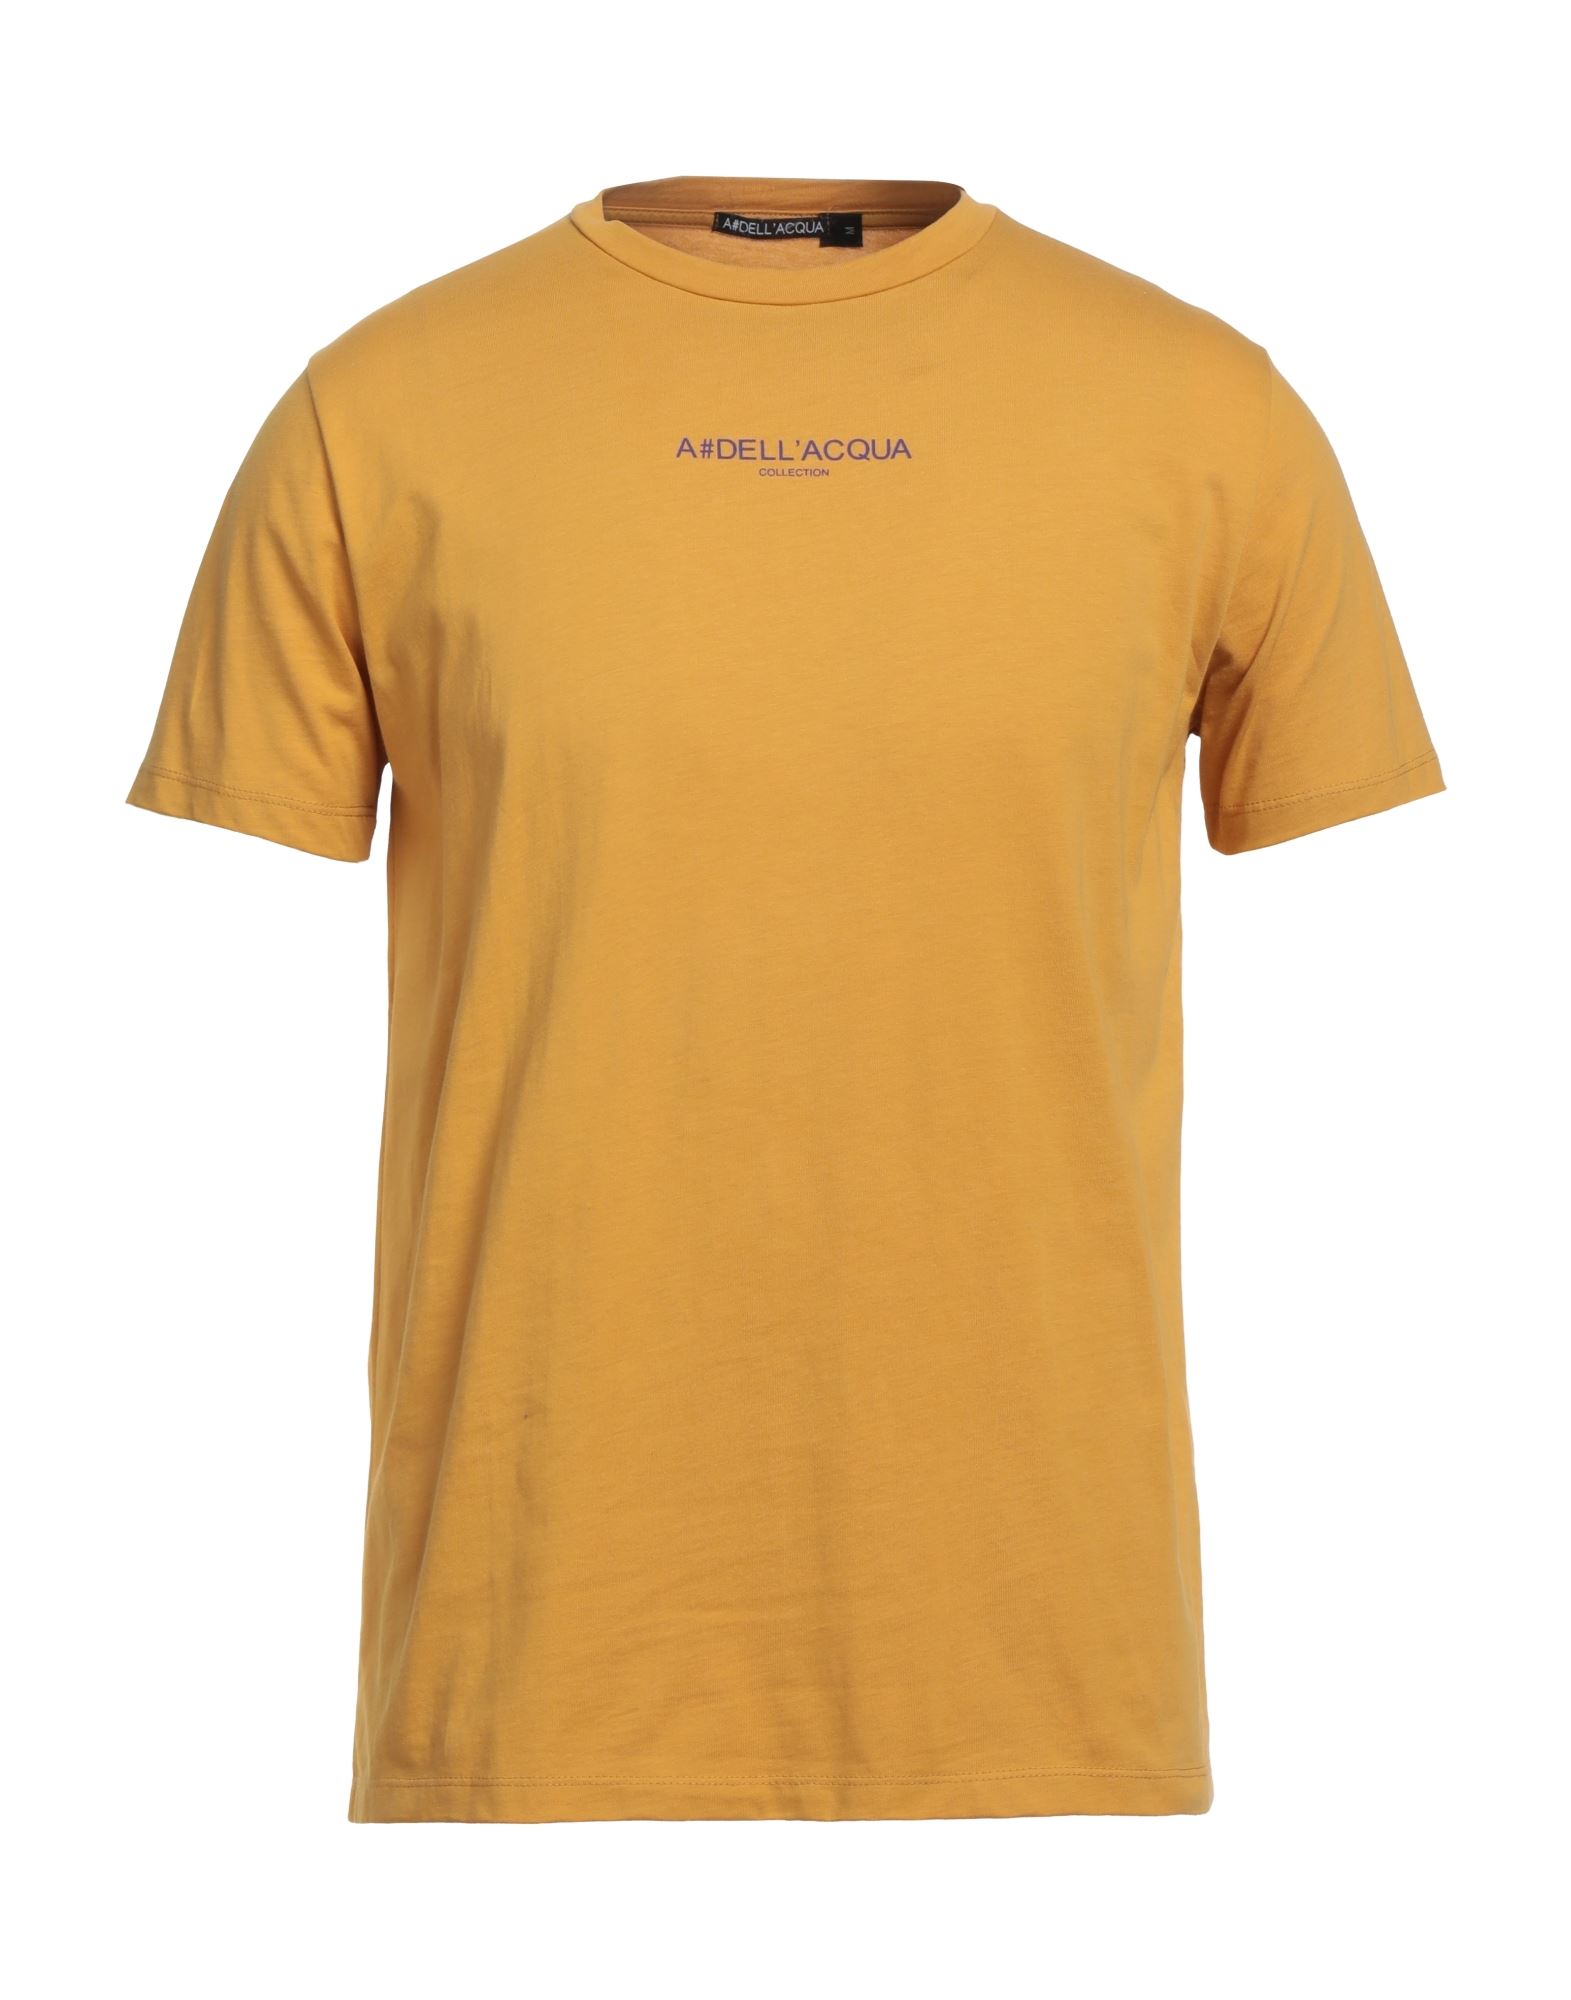 Alessandro Dell'acqua T-shirts In Yellow